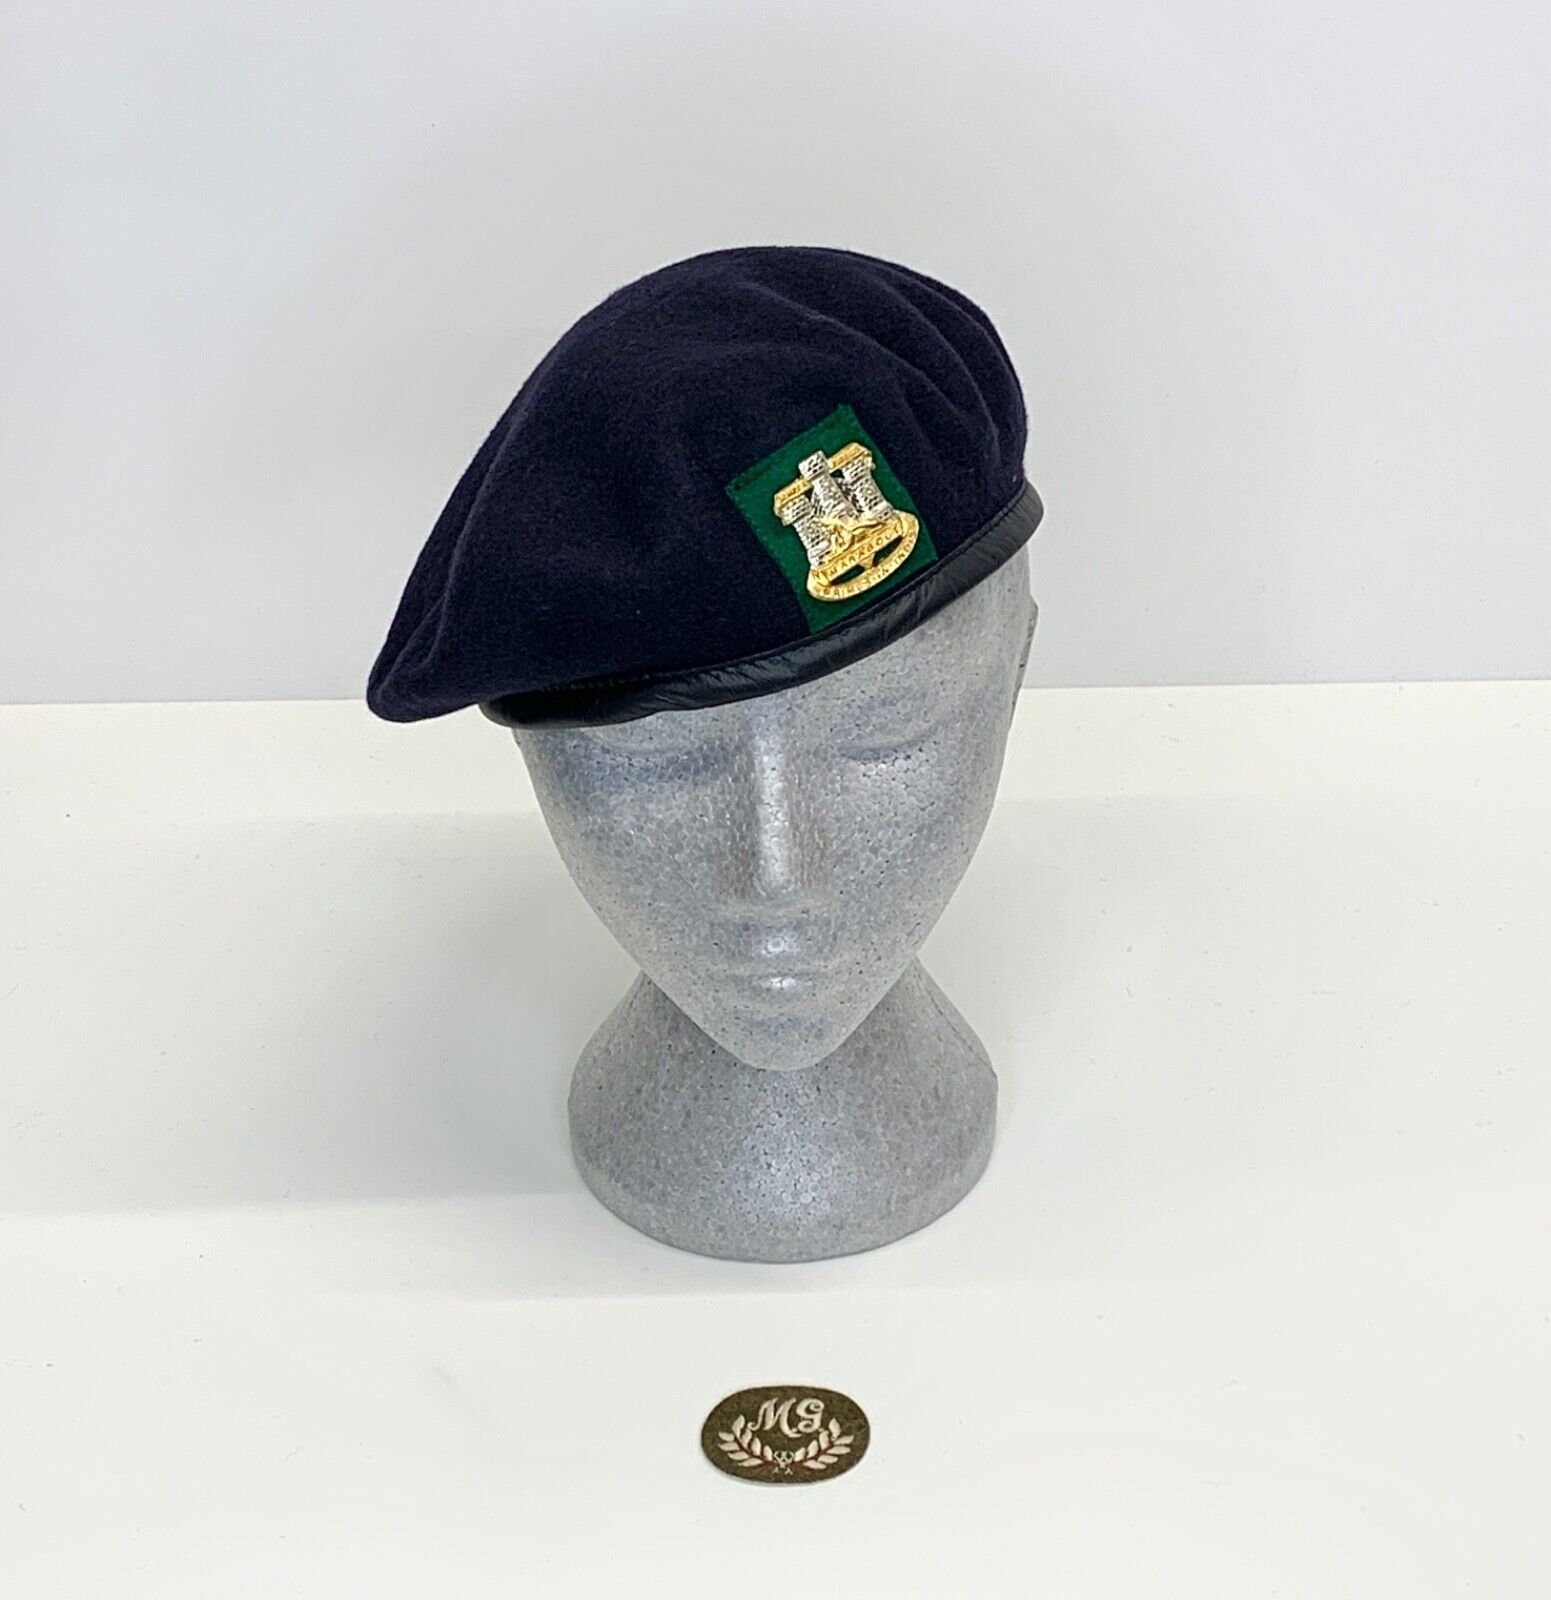 Devon & Dorset Regiment Beret, Badge & Qualification Patch. Size 58cm.